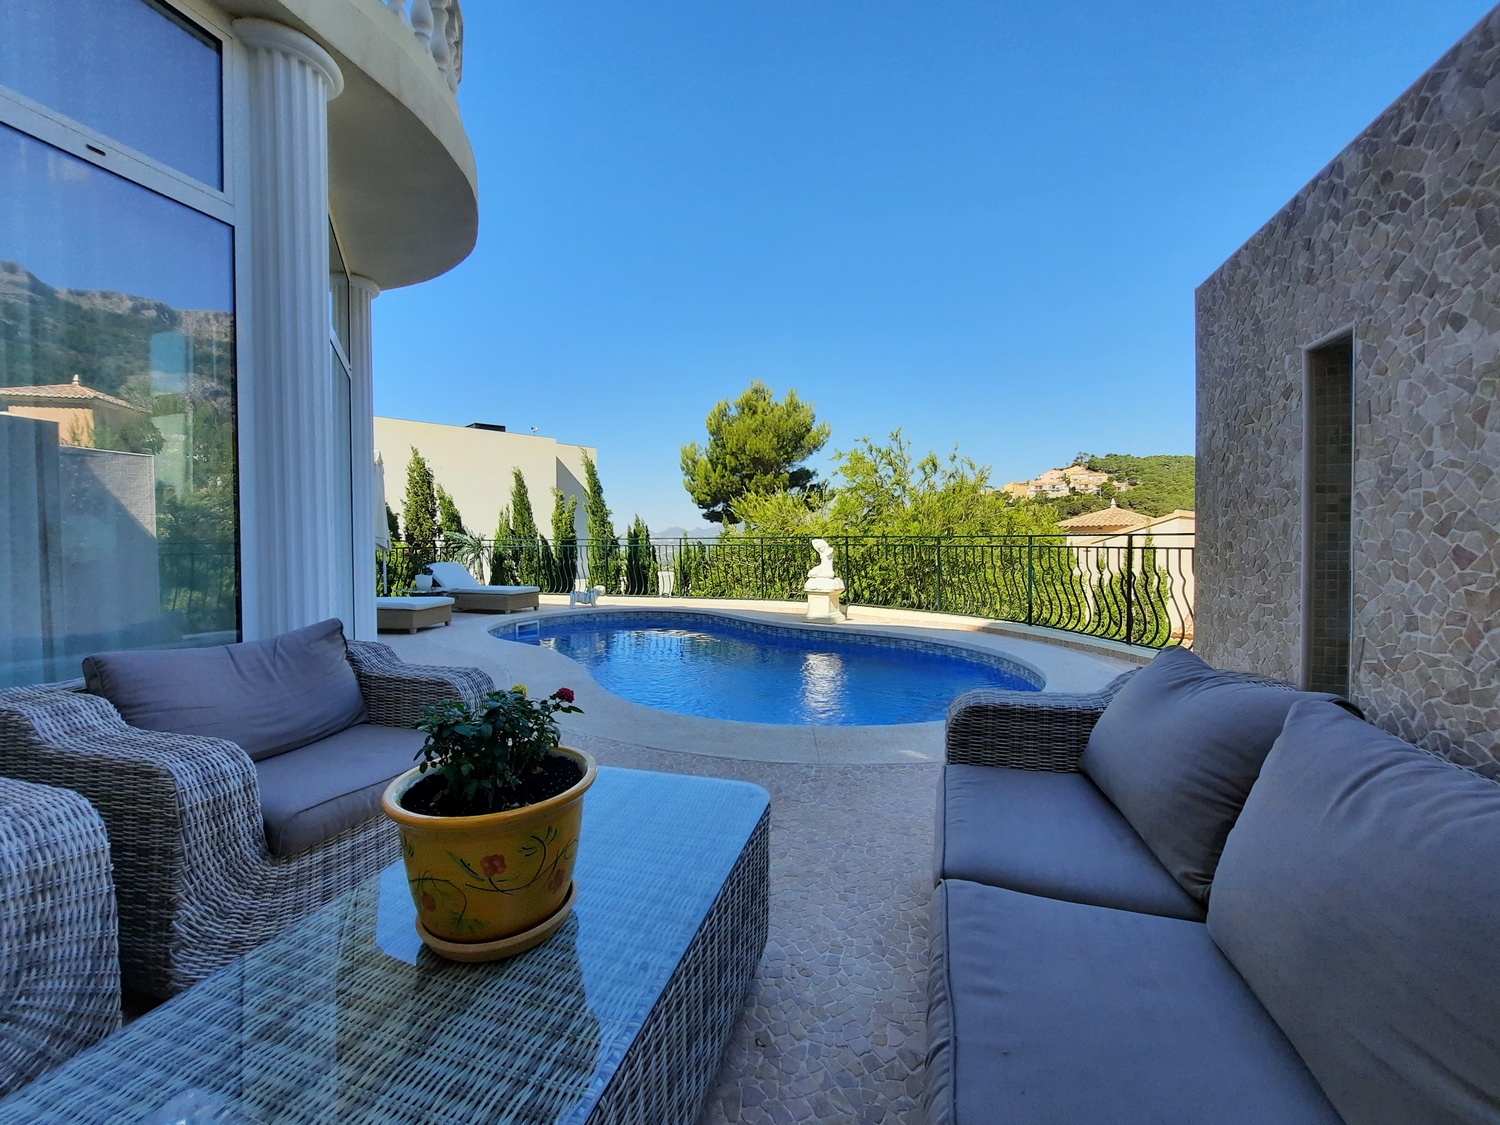 Villa de estilo mediterránea y con vistas panorámicas en Altea